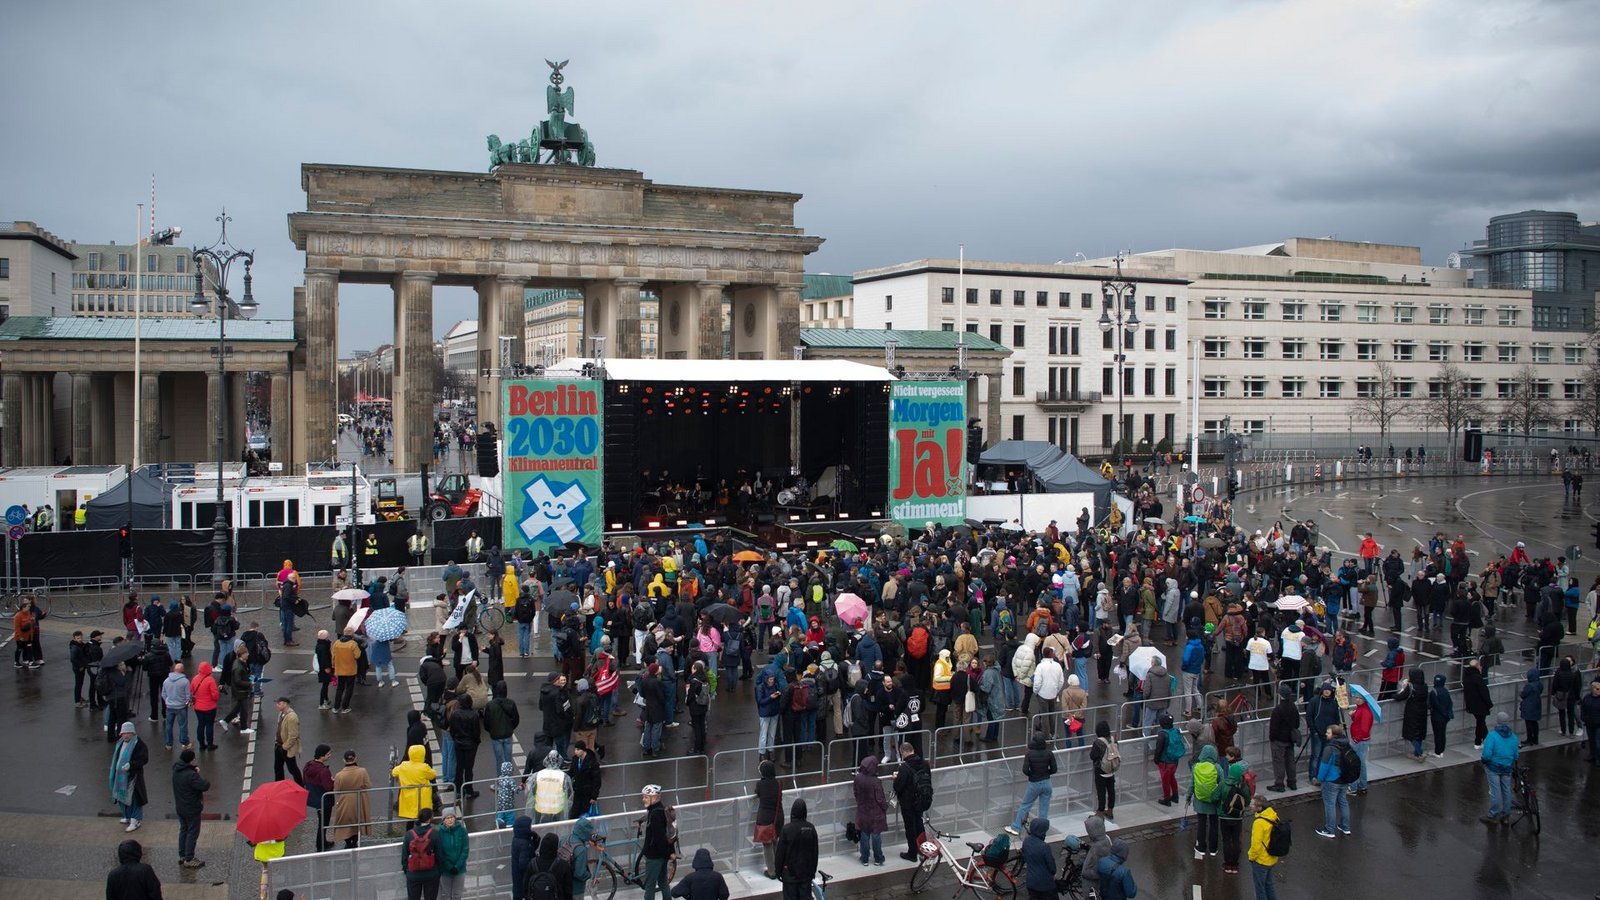 Zum Auftakt des "Berlin Climate Aid" Konzert hatten sich nur wenige Menschen am Brandenburger Tor eingefunden.Foto: Paul Zinken/dpa